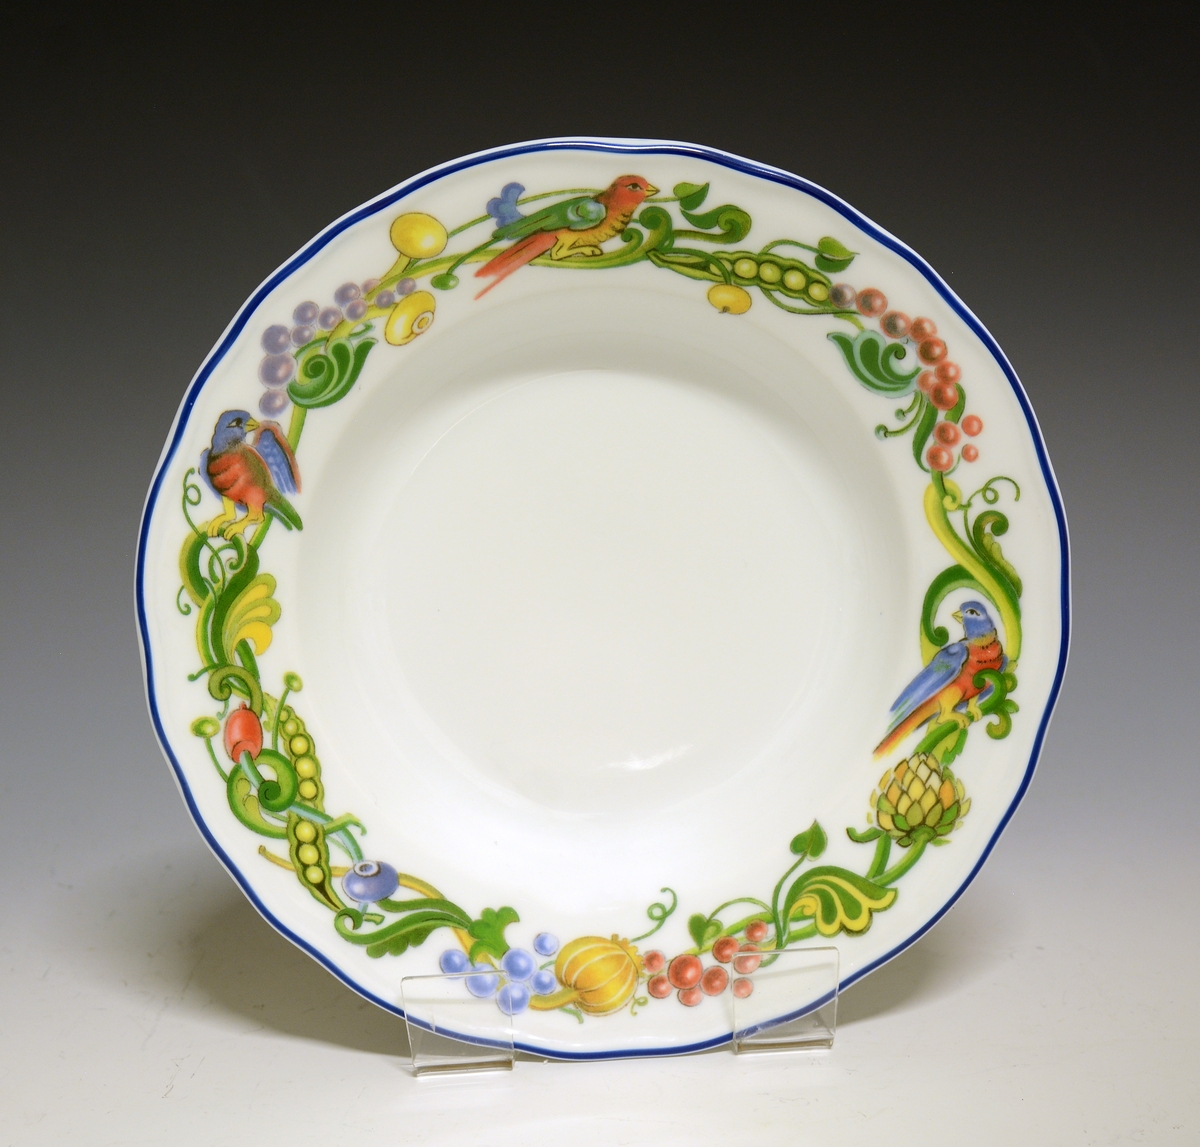 Tallerken av porselen med hvit glasur. Dekorert med en bord rundt fanen med fugler, bær og bladverk.
Modell: Victoria
Dekor: Fantasia